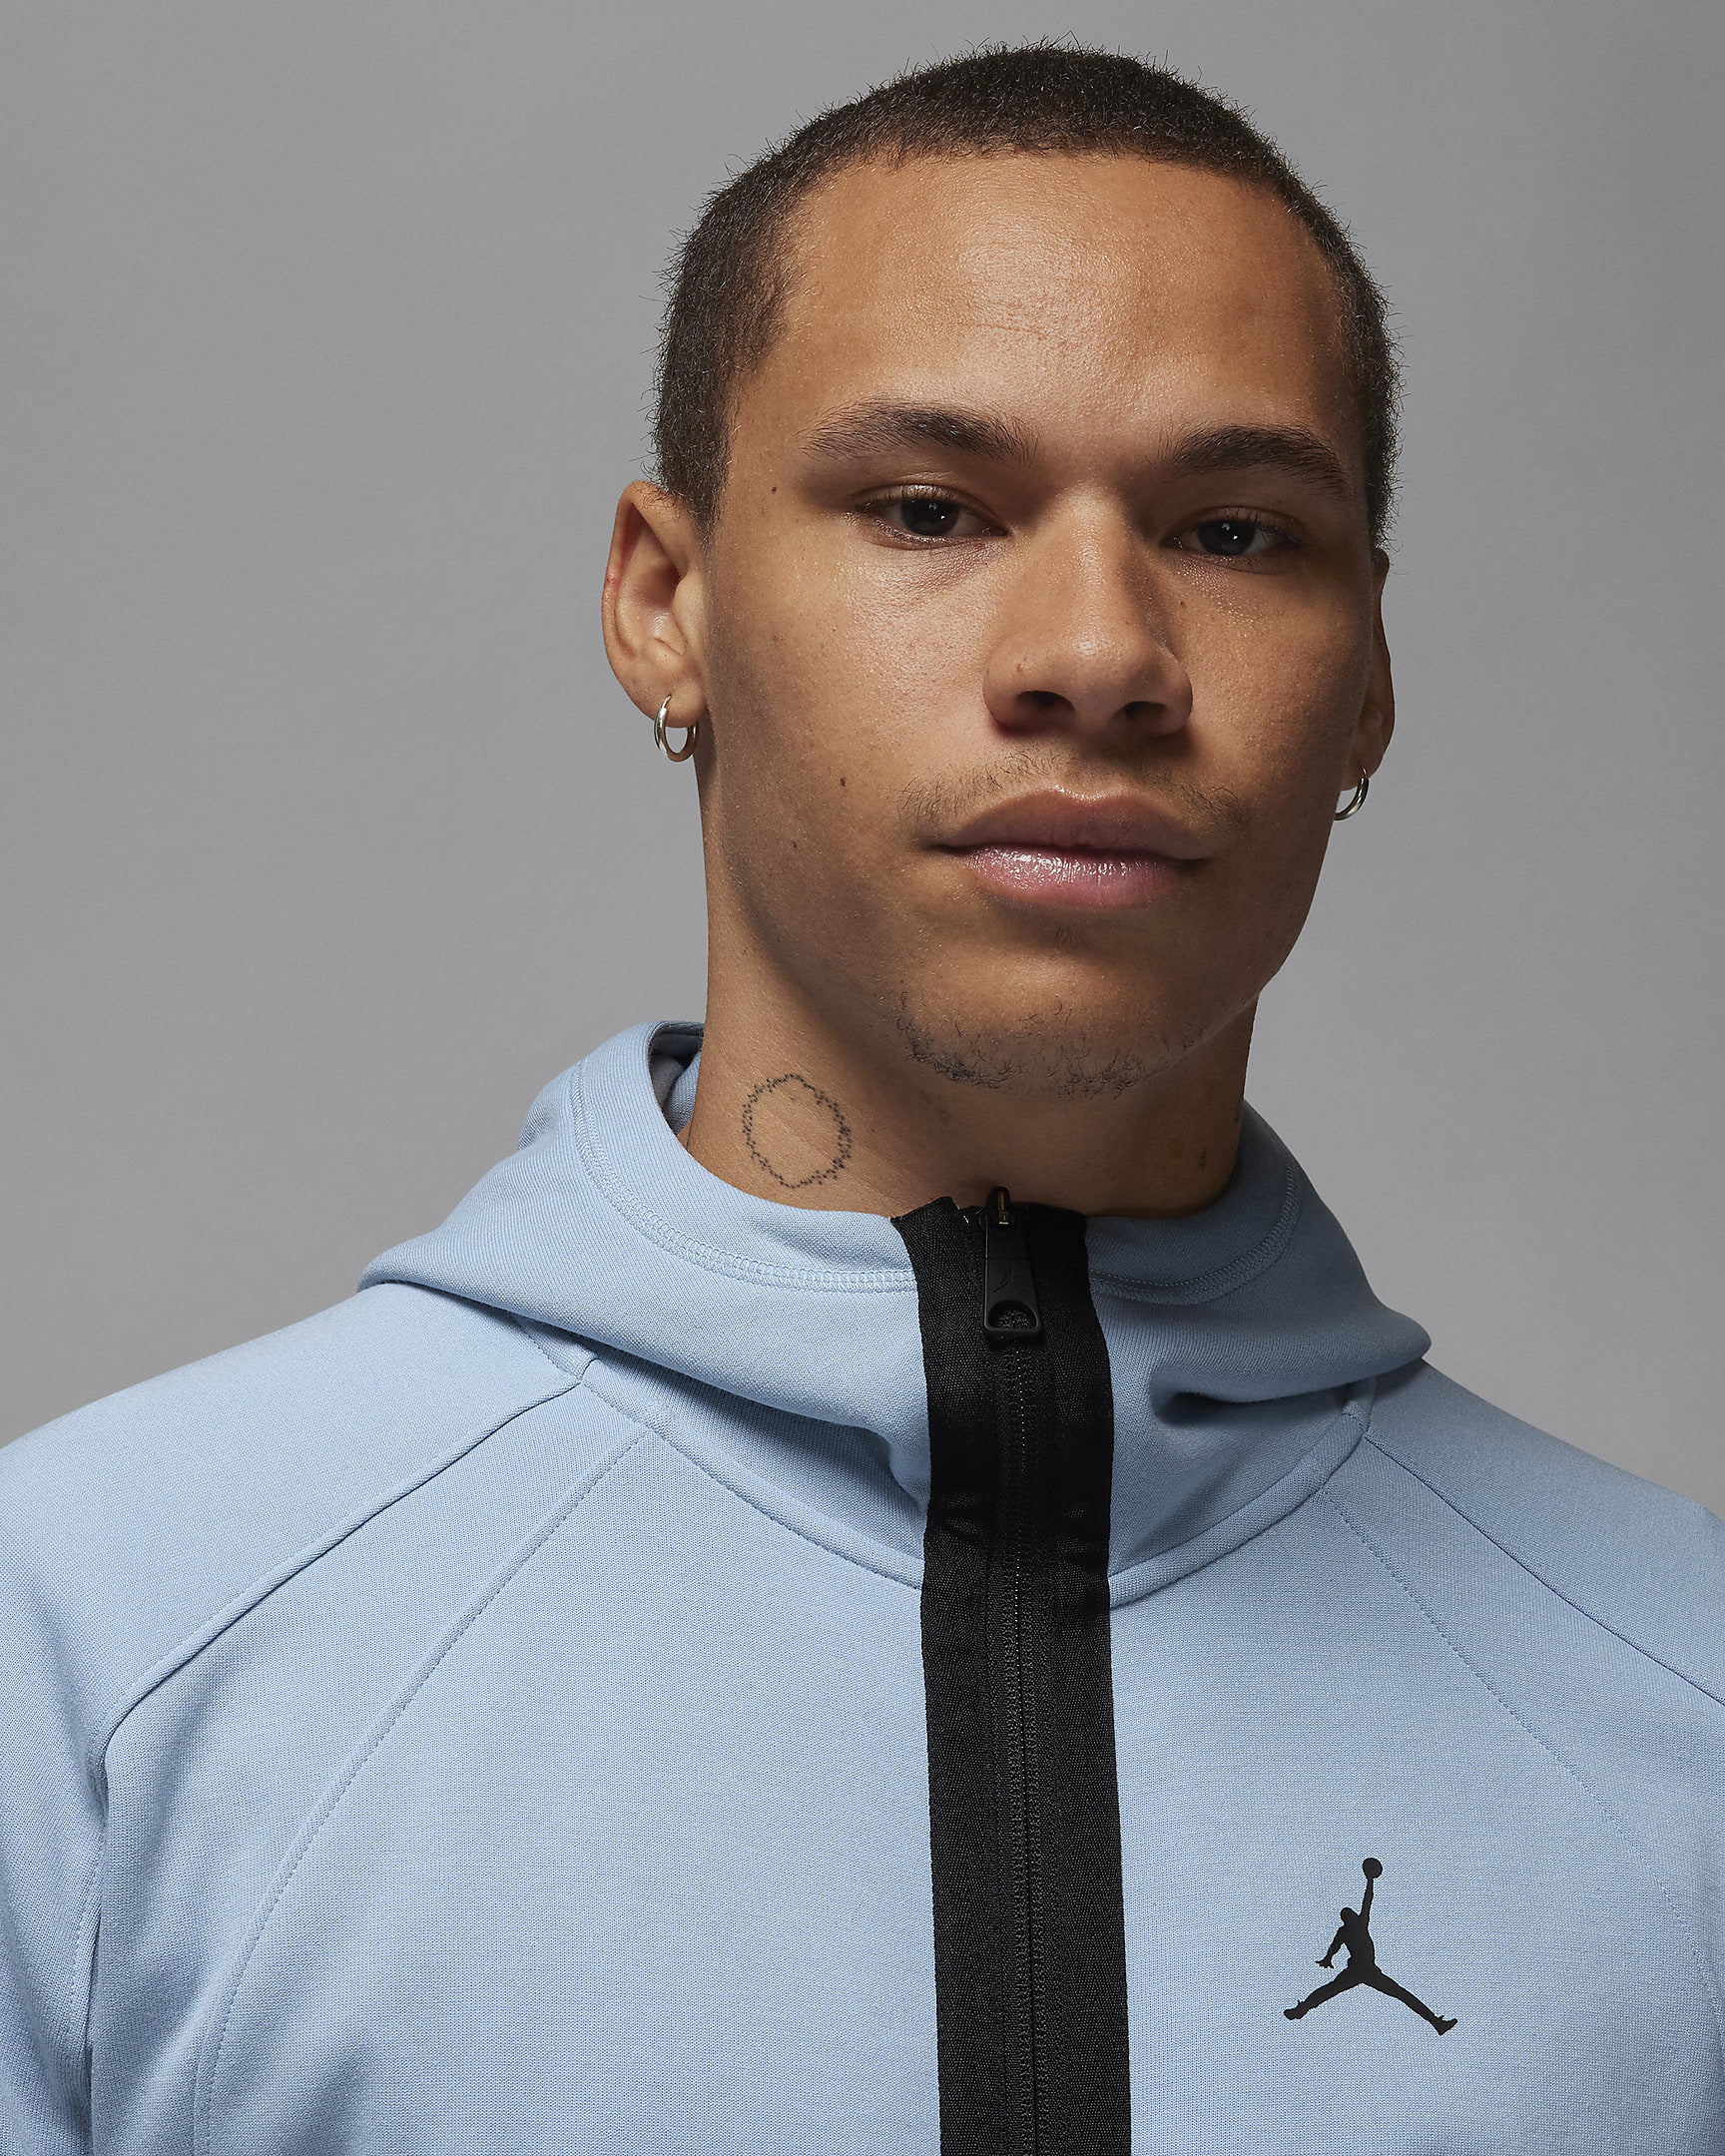 Jordan Dri-FIT Sport Men's Air Fleece Full-Zip Hoodie. Nike.com